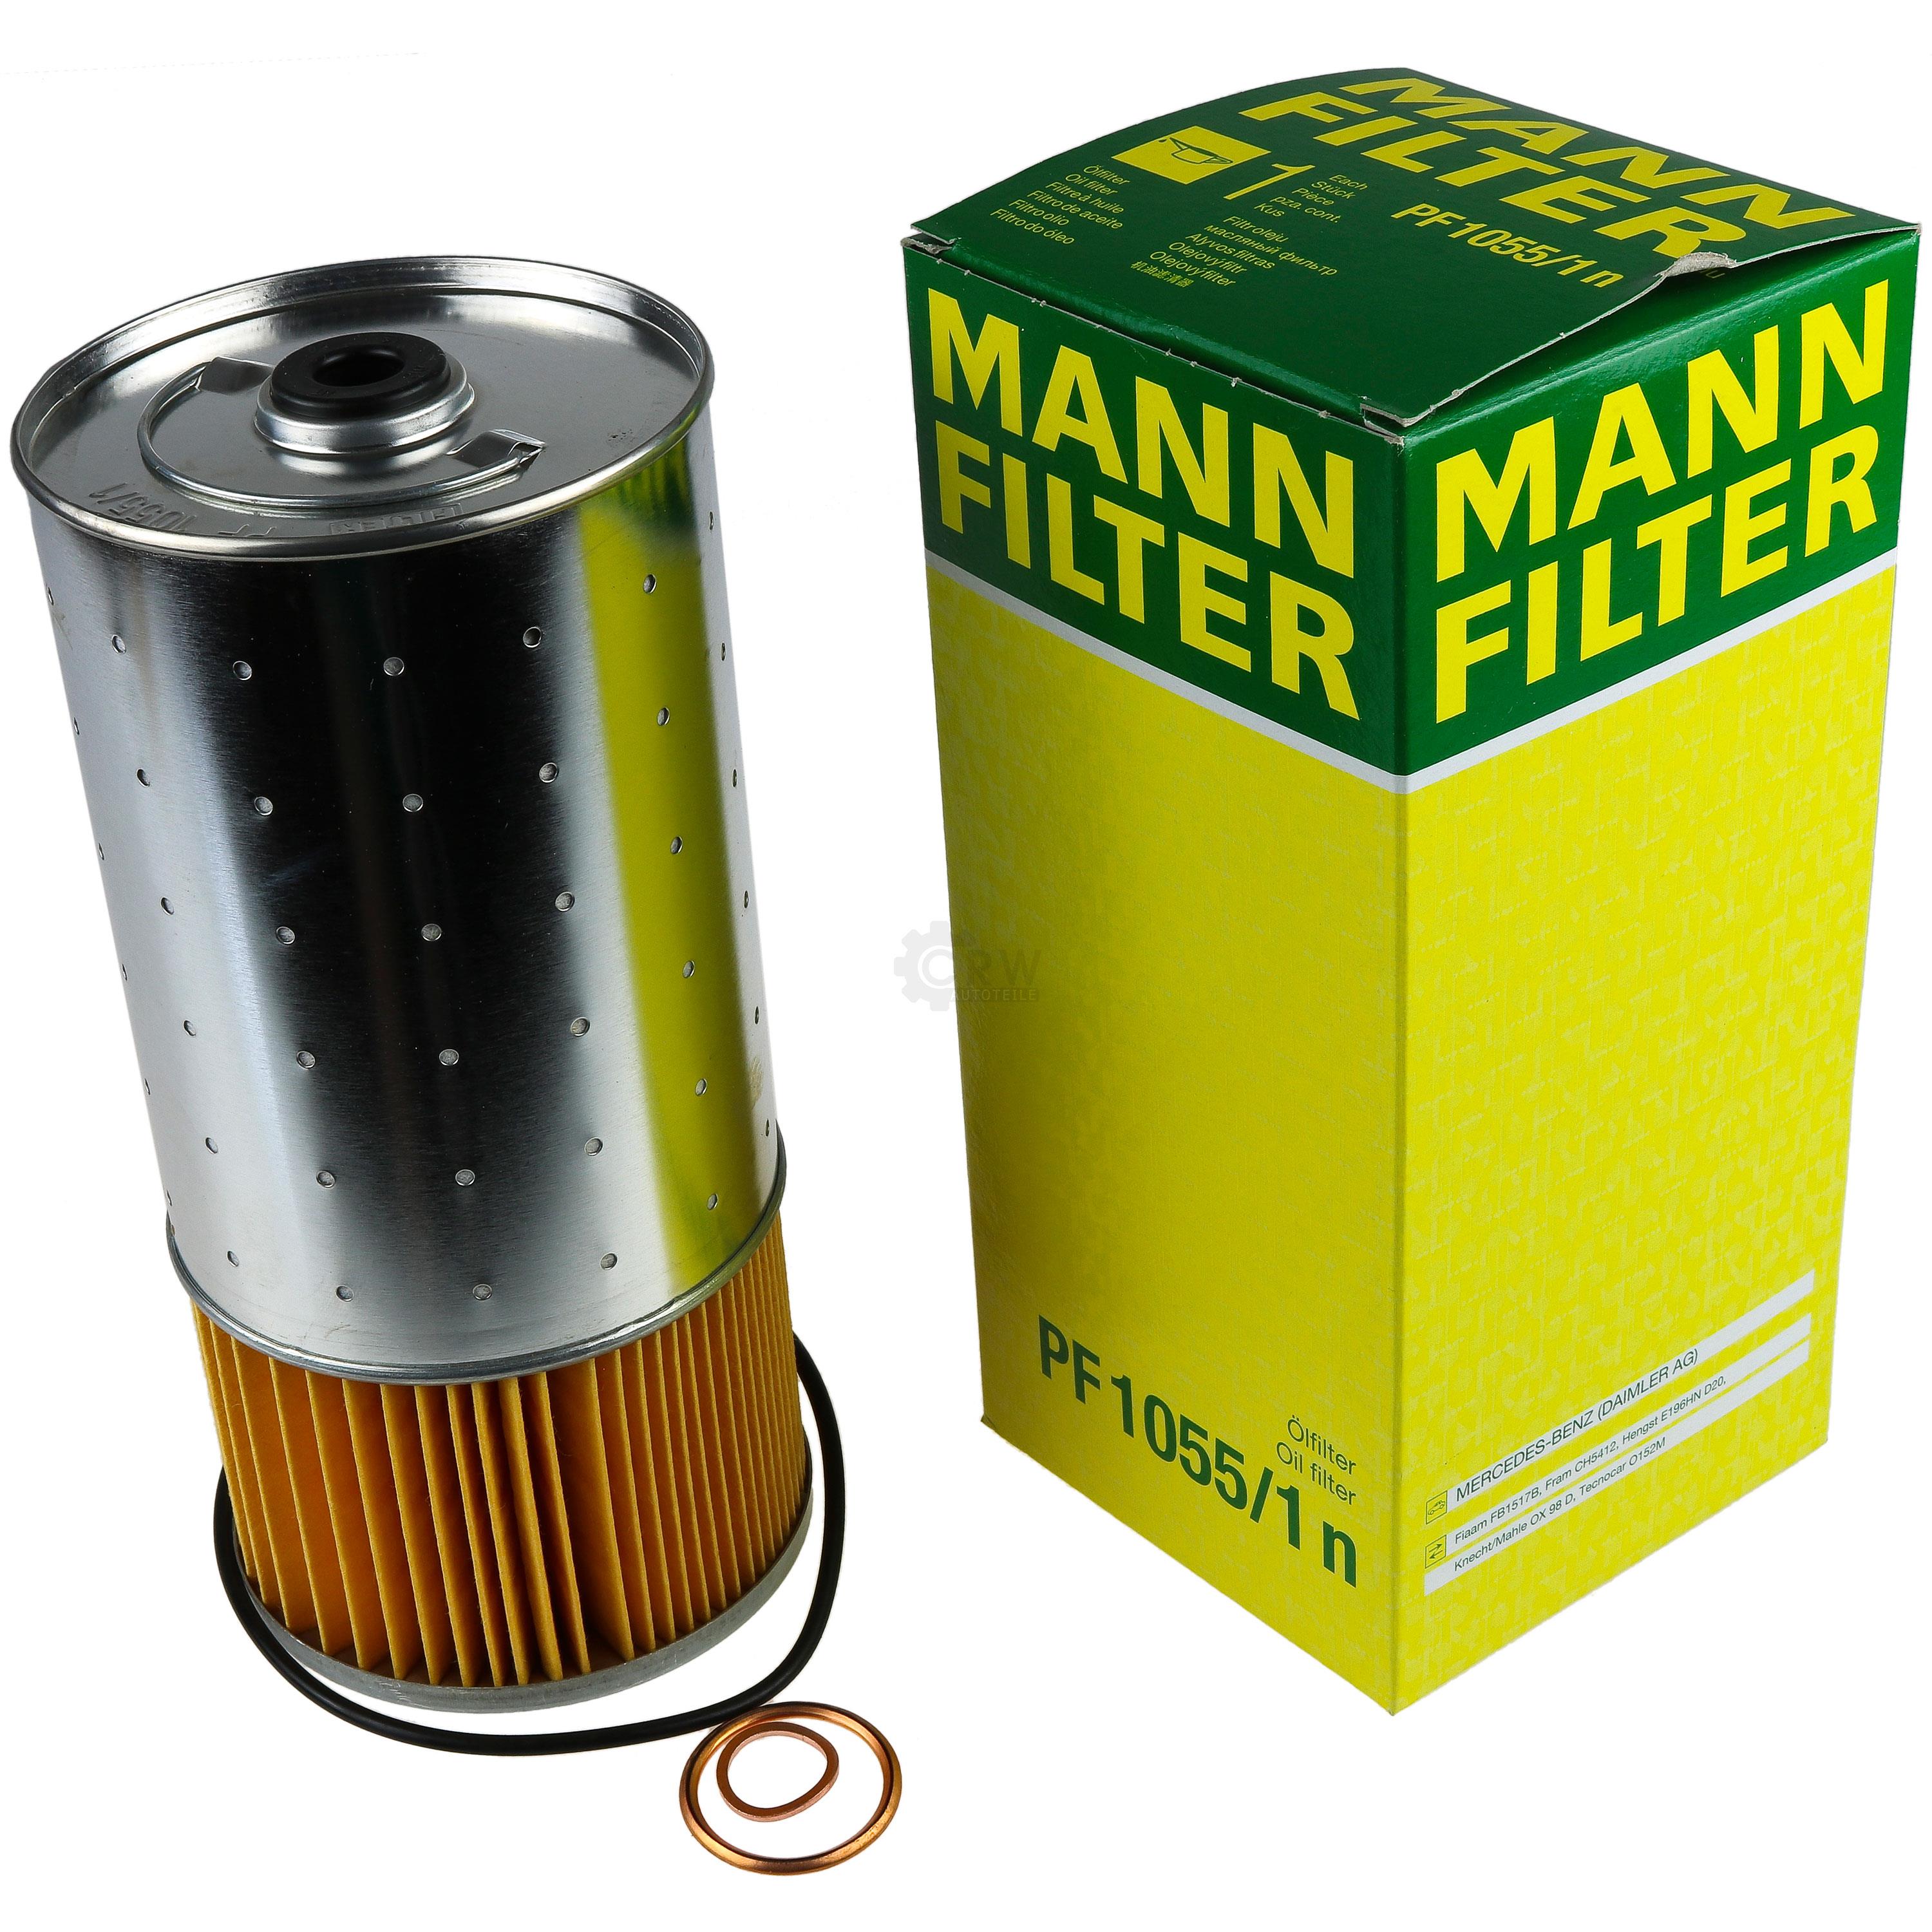 MANN-FILTER Ölfilter Oelfilter PF 1055/1 n Oil Filter